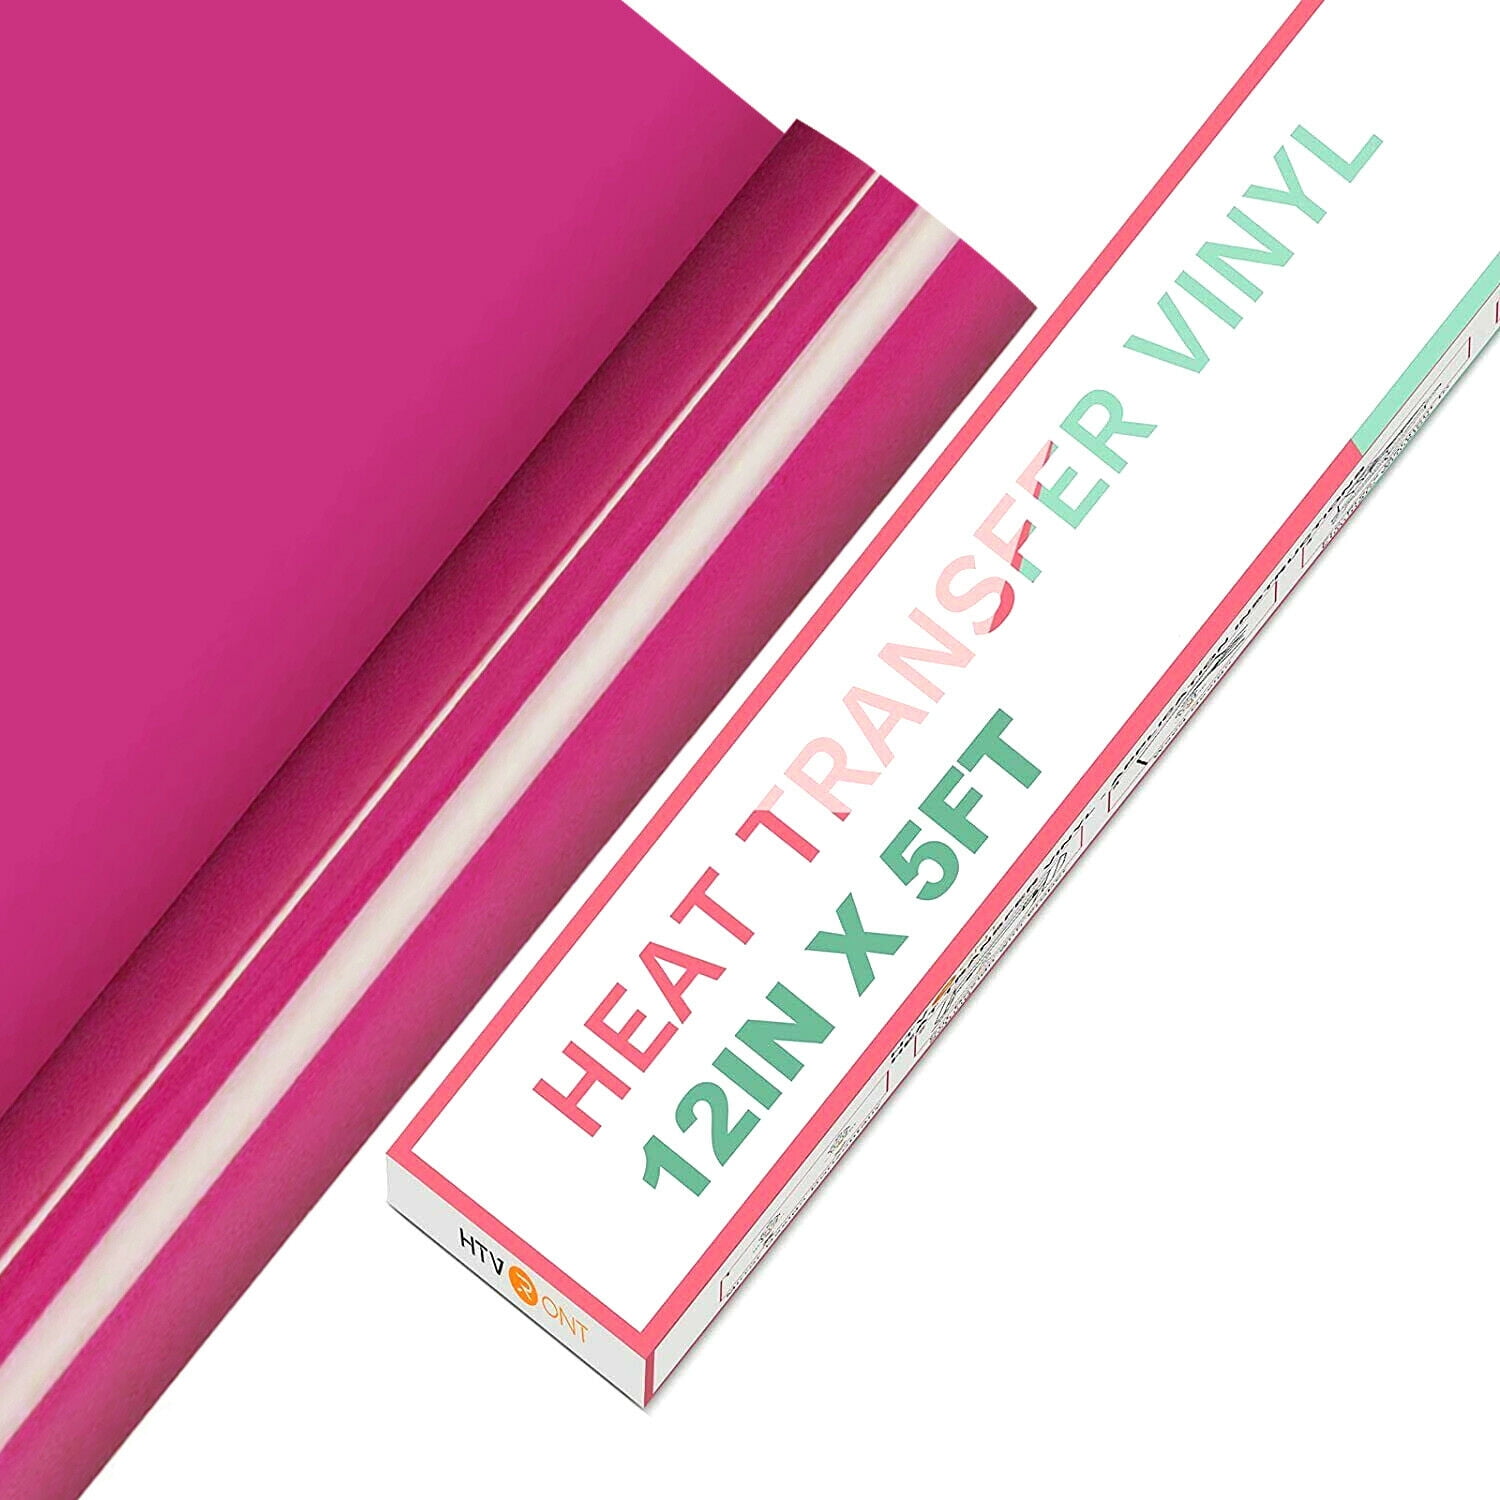 Bolton Tools Pink HTV Vinyl Roll - 12 x 5FT Heat Transfer Vinyl